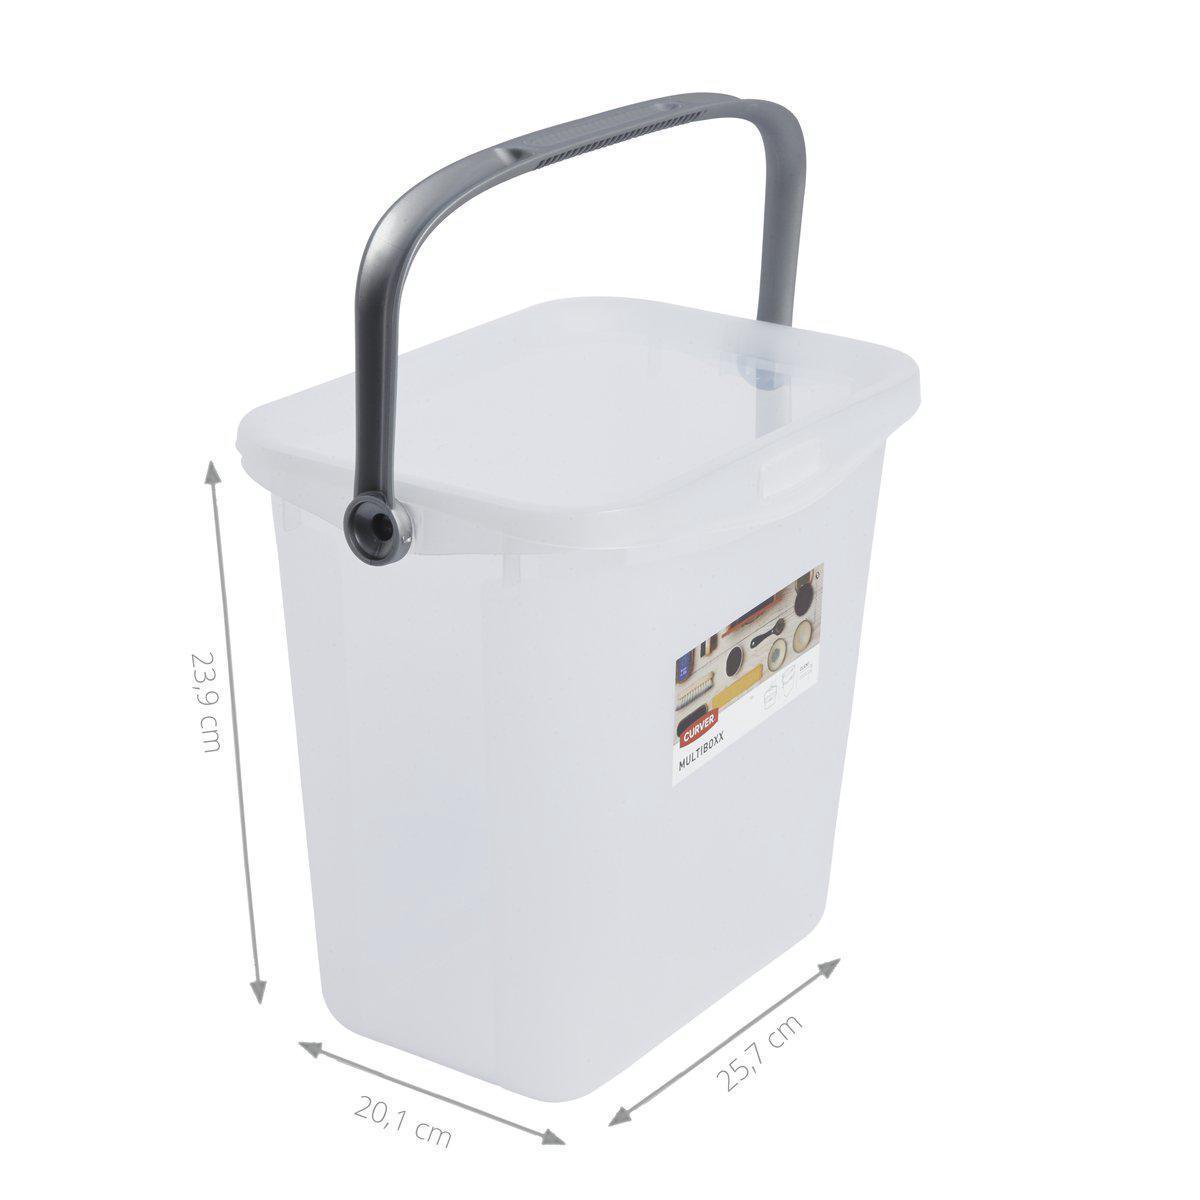 bol.com | Curver Multiboxx Opbergbox - 6 liter - Transparant